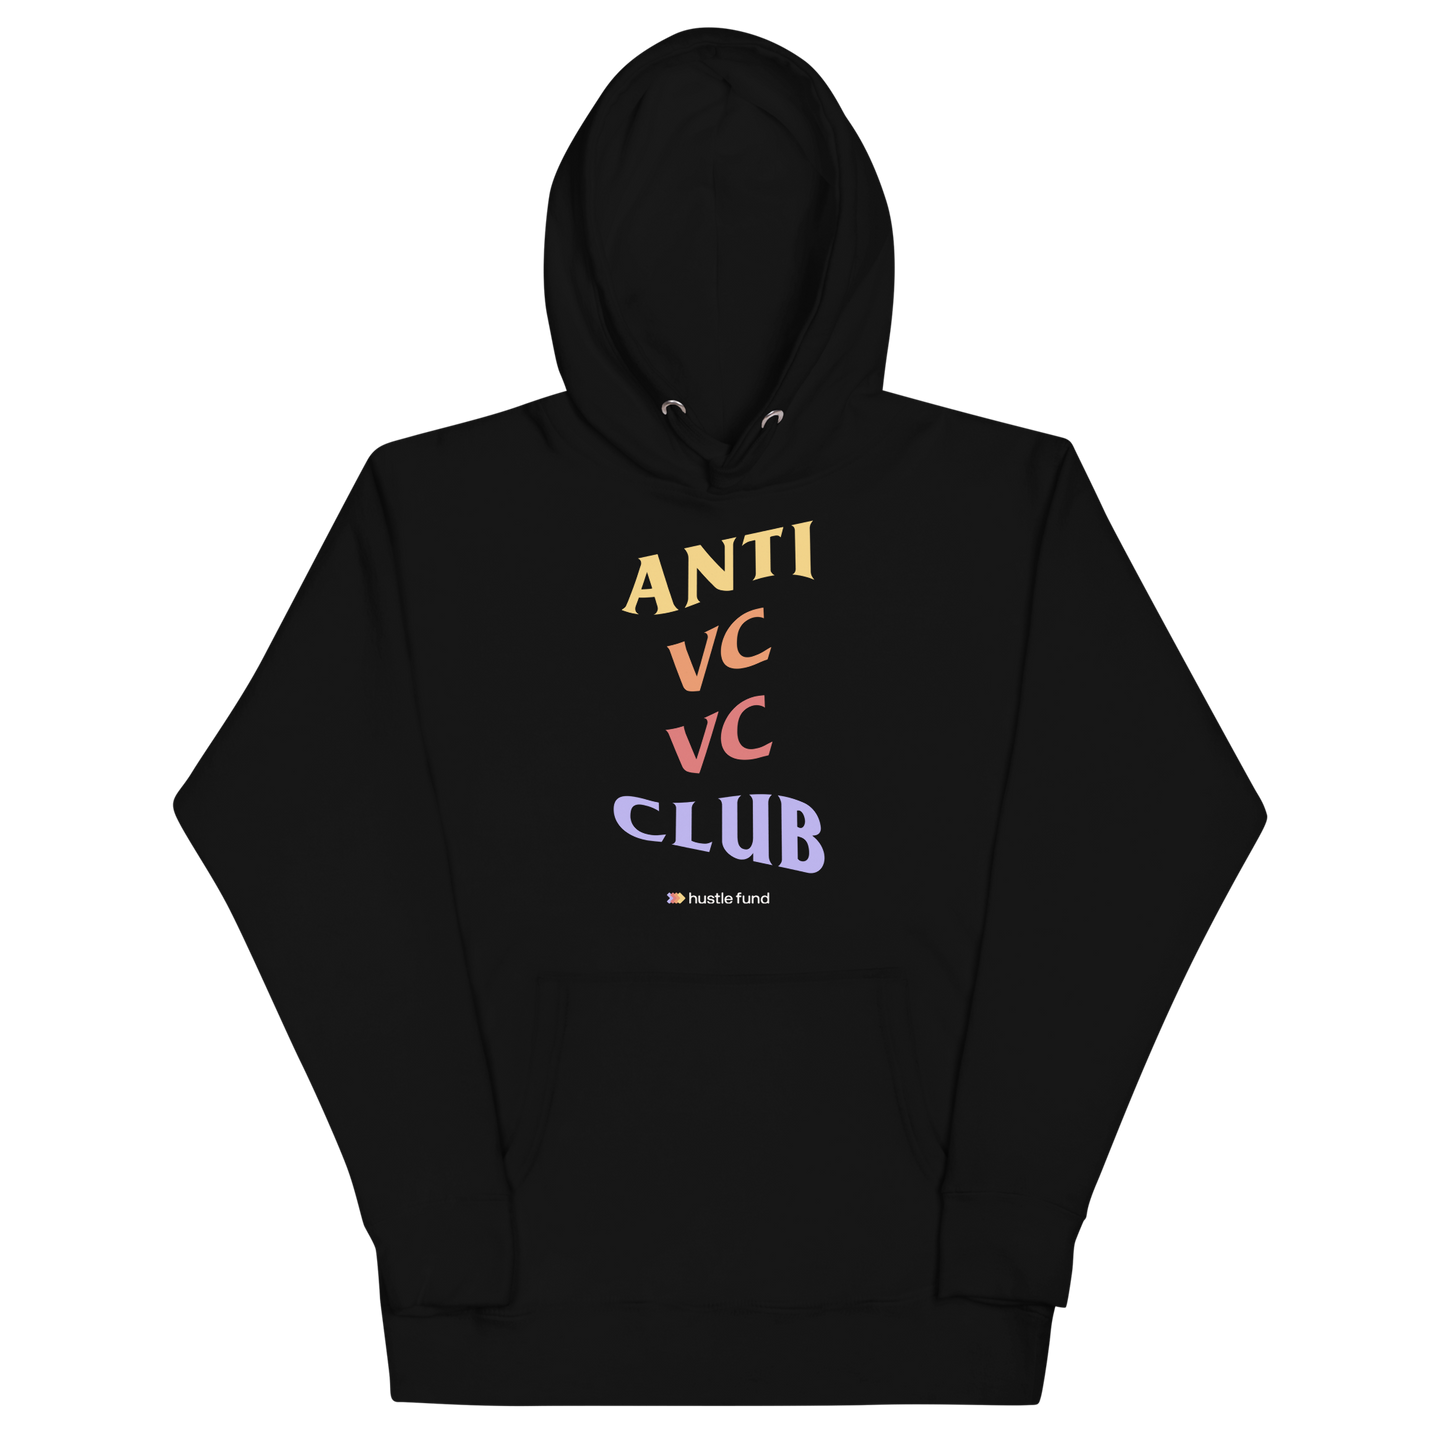 Anti VC VC Club Unisex Hoodie